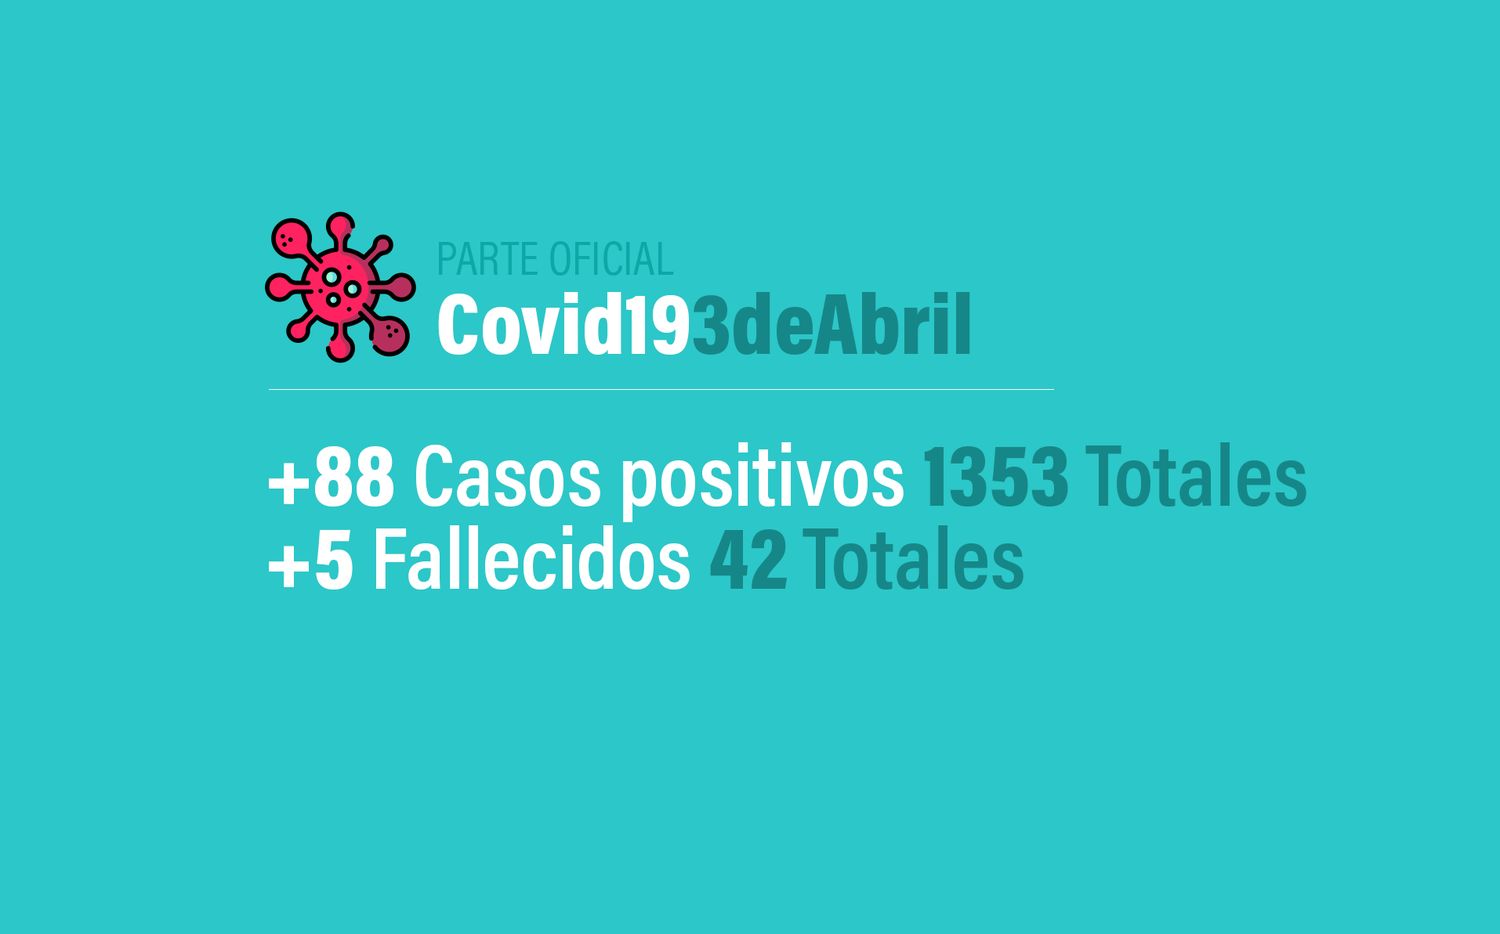 Coronavirus en Argentina: 88 nuevos casos, 1353 infectados y 42 muertos en total, al 3 de abril